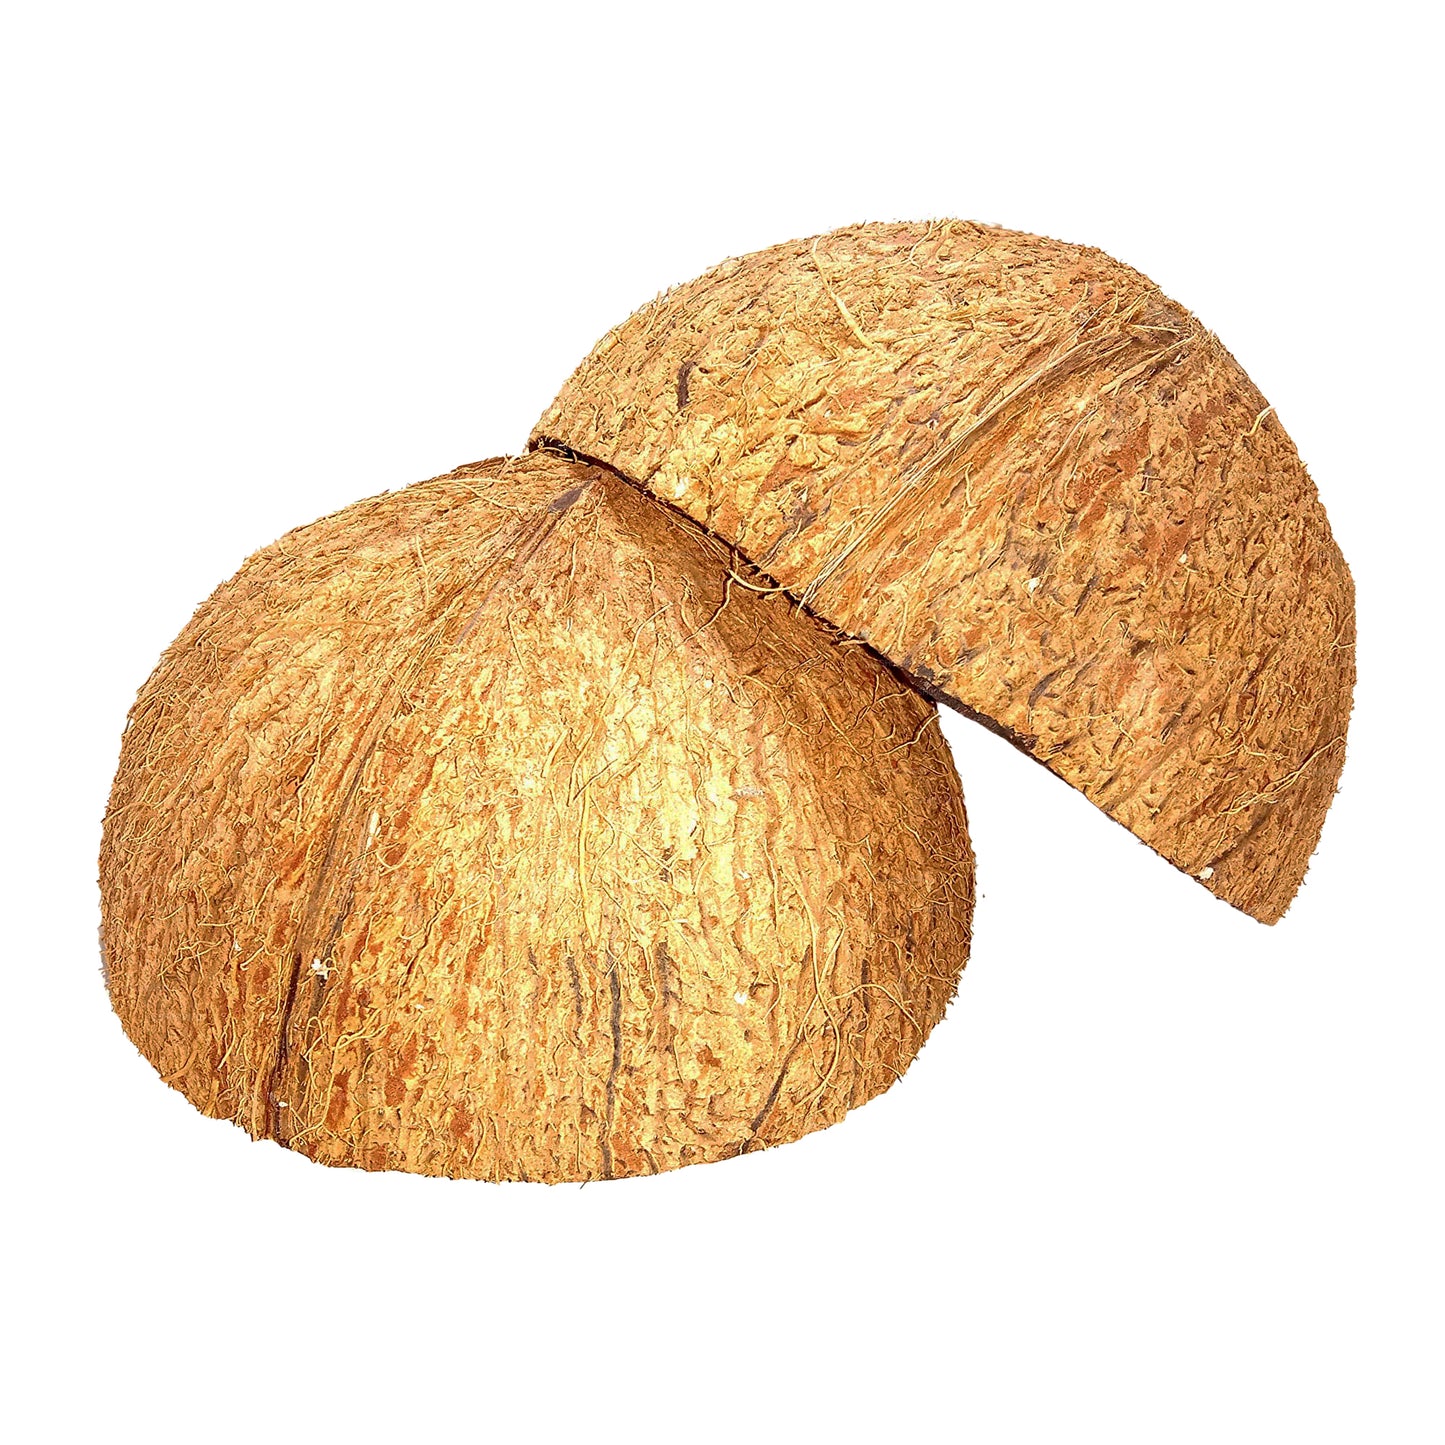 Kokosnussschalenhälften (2 Stück)